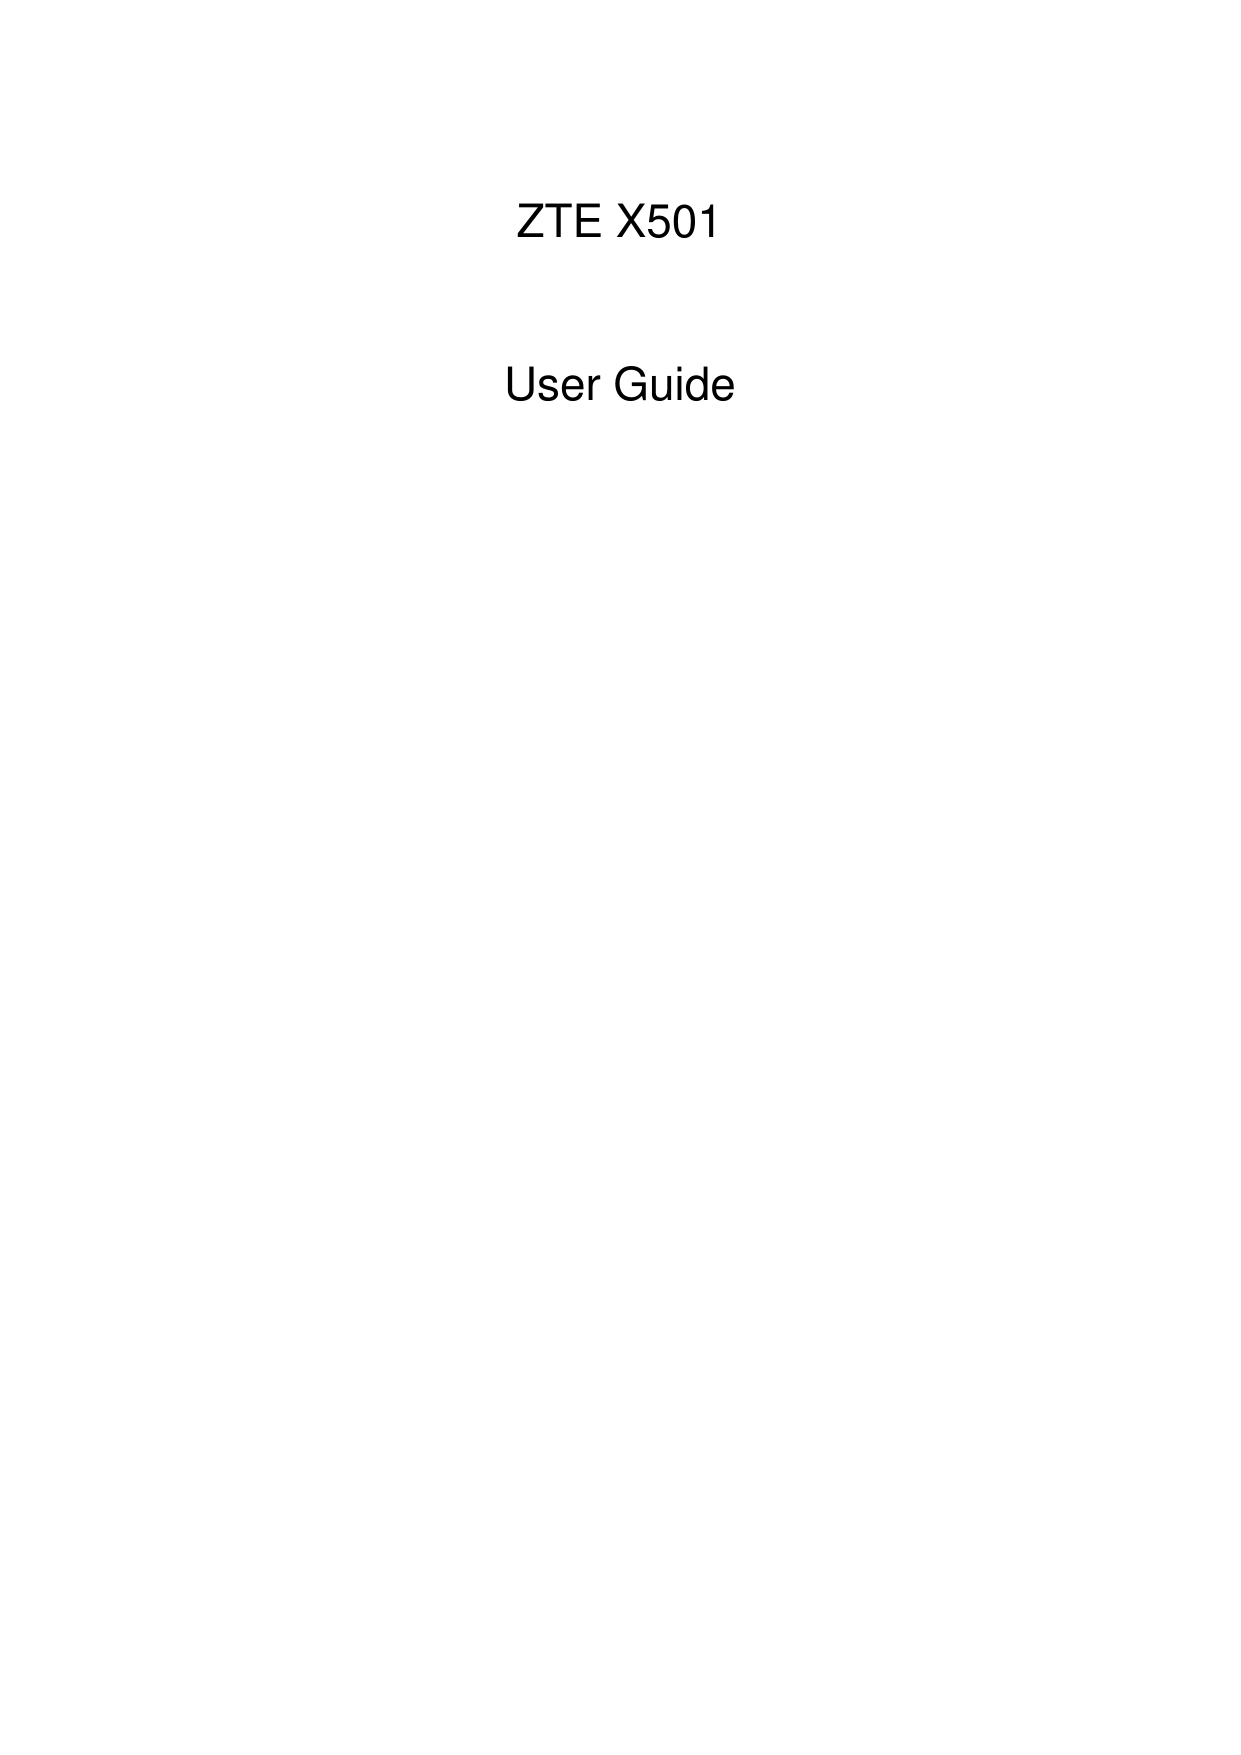    ZTE X501  User Guide 